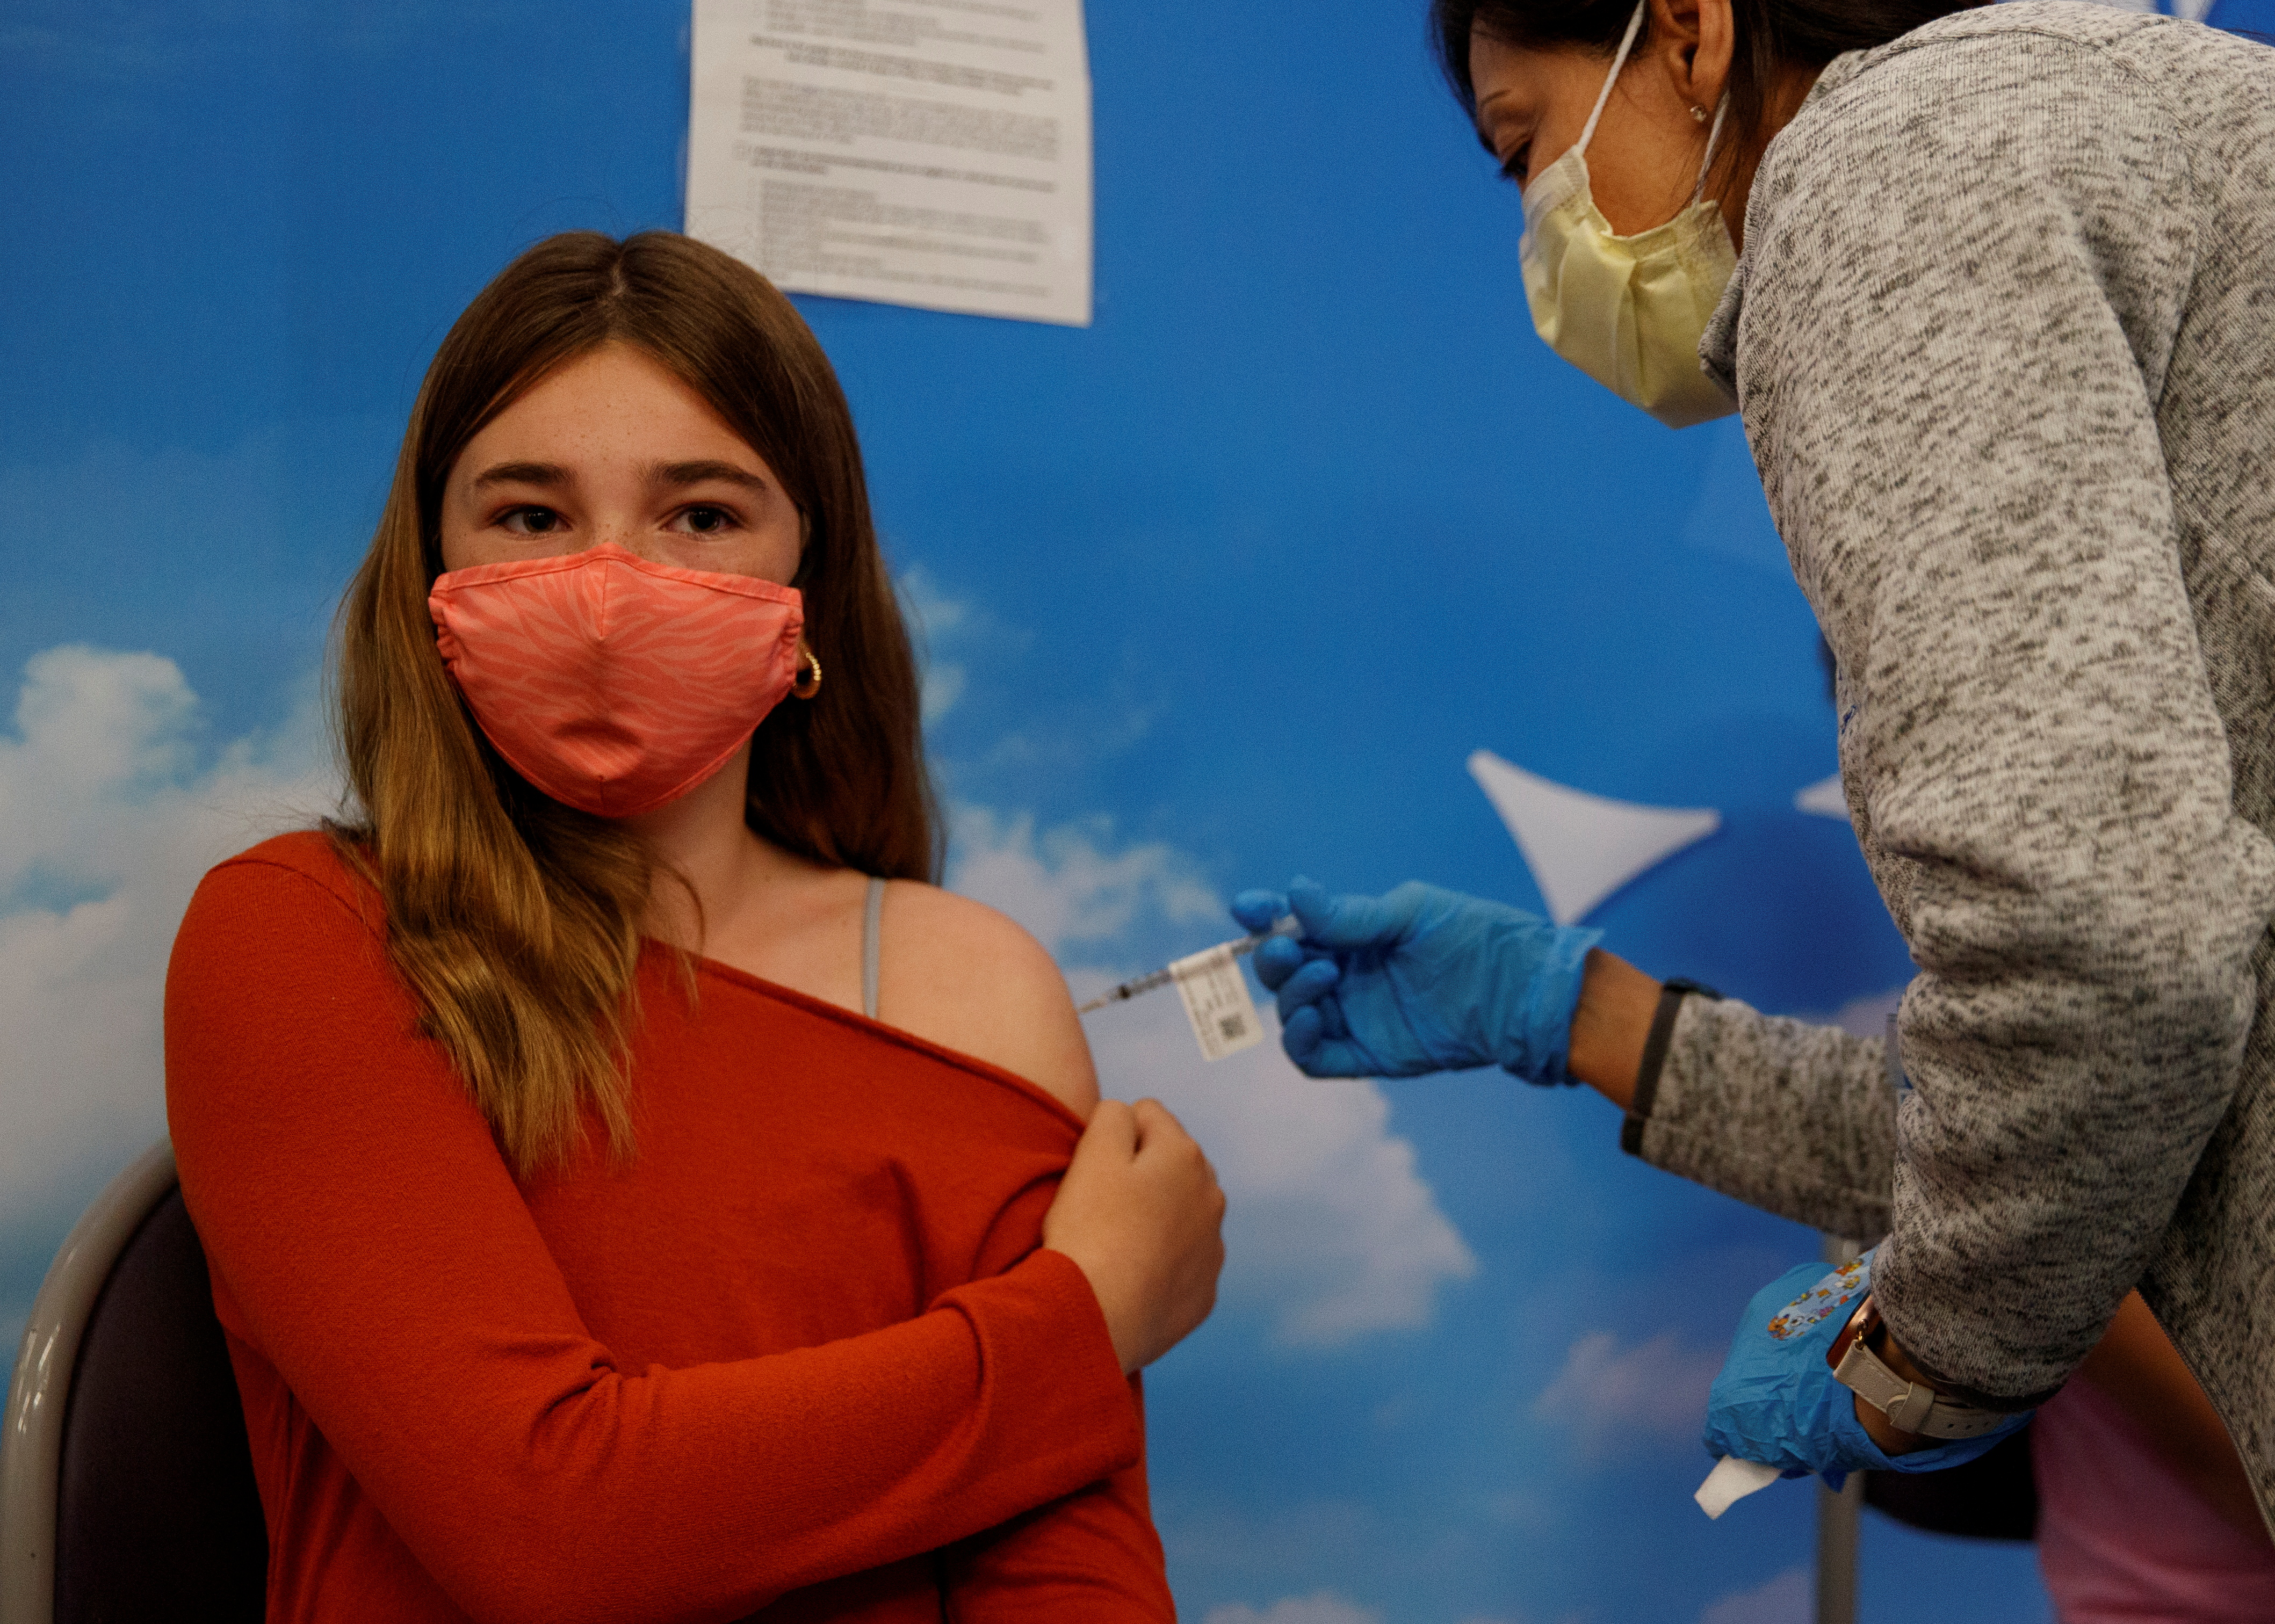 Children receive the Pfizer-BioNTech coronavirus vaccine at Rady's Children's Hospital in San Diego